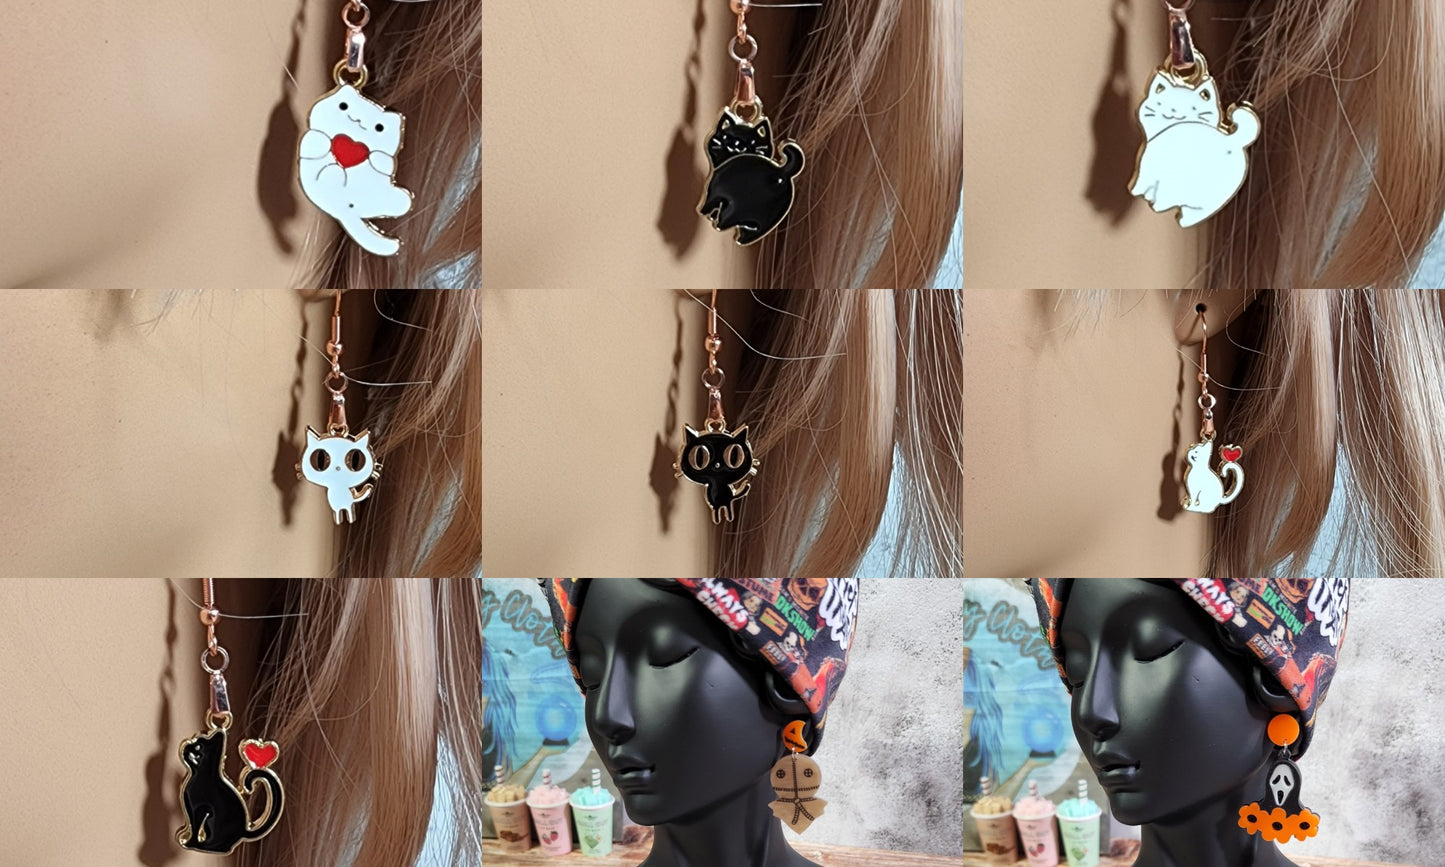 1-2 Scoops of Cute Kawaii or Spooky Earrings | 200+ variations Stud, dangles, drop dangles |